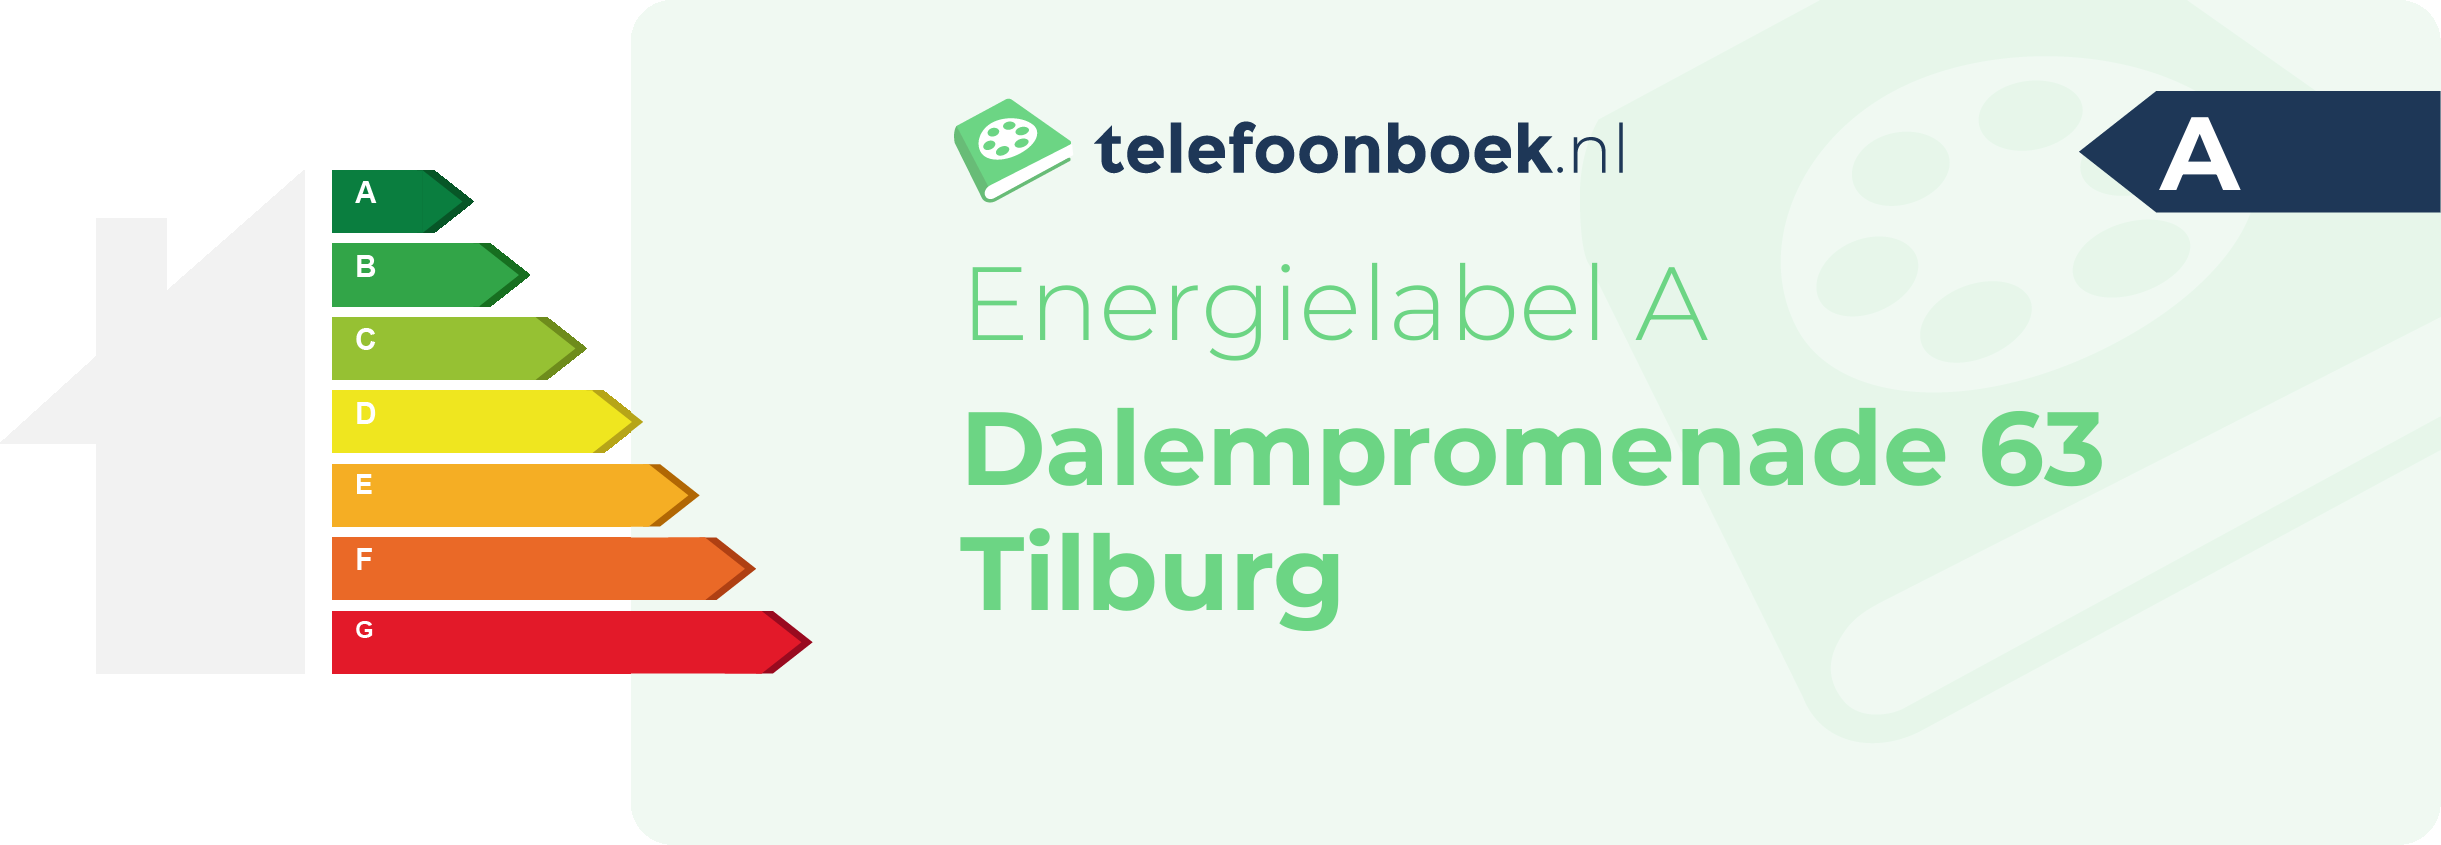 Energielabel Dalempromenade 63 Tilburg